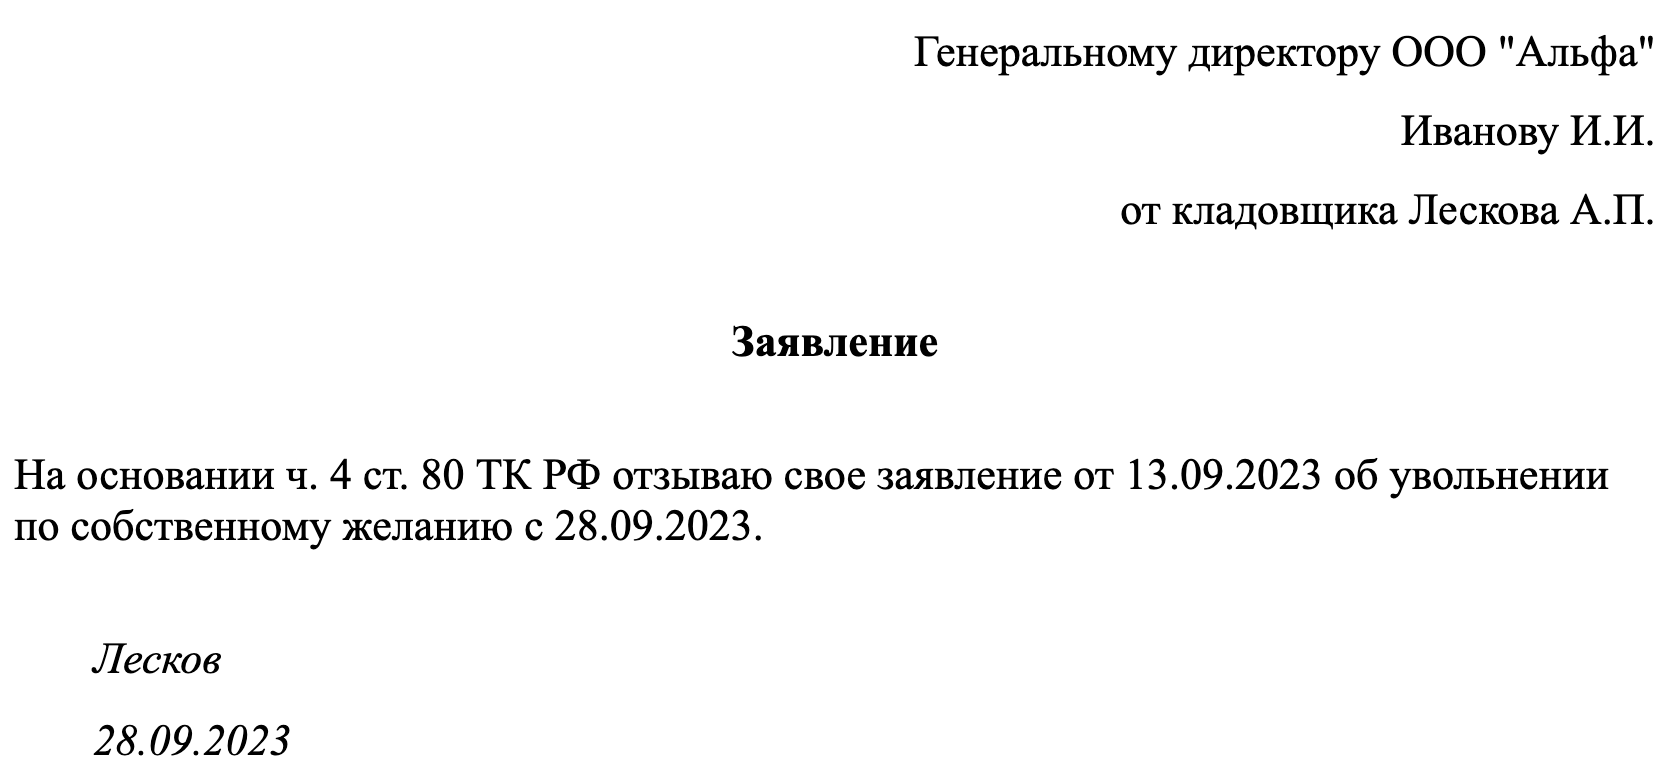 Работодатель не увольняет по собственному желанию. Вычеты по ИПН В Казахстане 2023. Соц вычет документы.